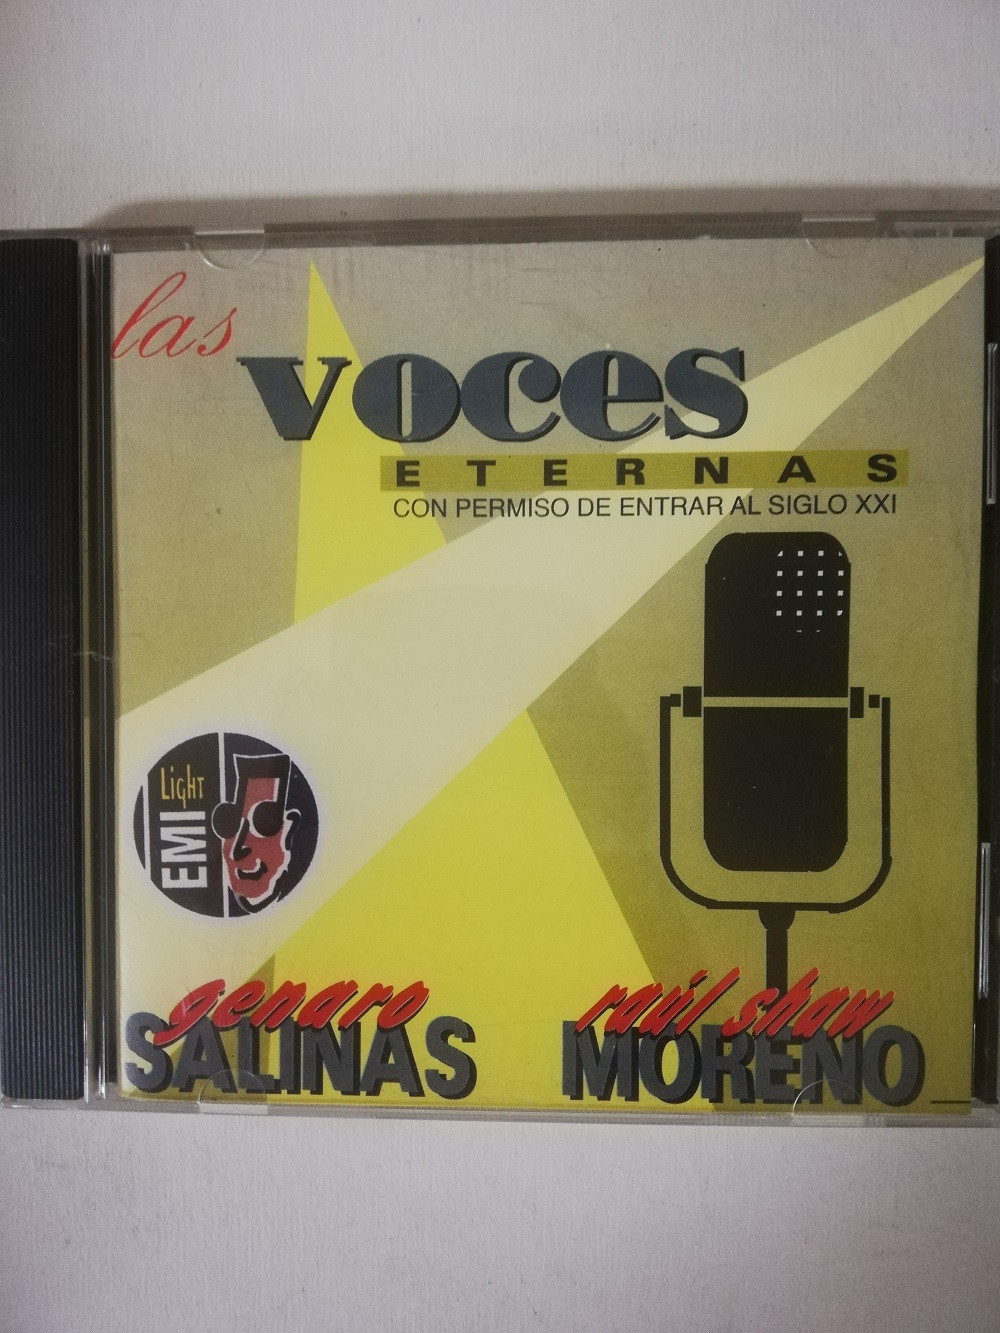 Imagen CD GERARDO SALINAS/RAUL SHAW MORENO - LAS VOCES ETERNAS